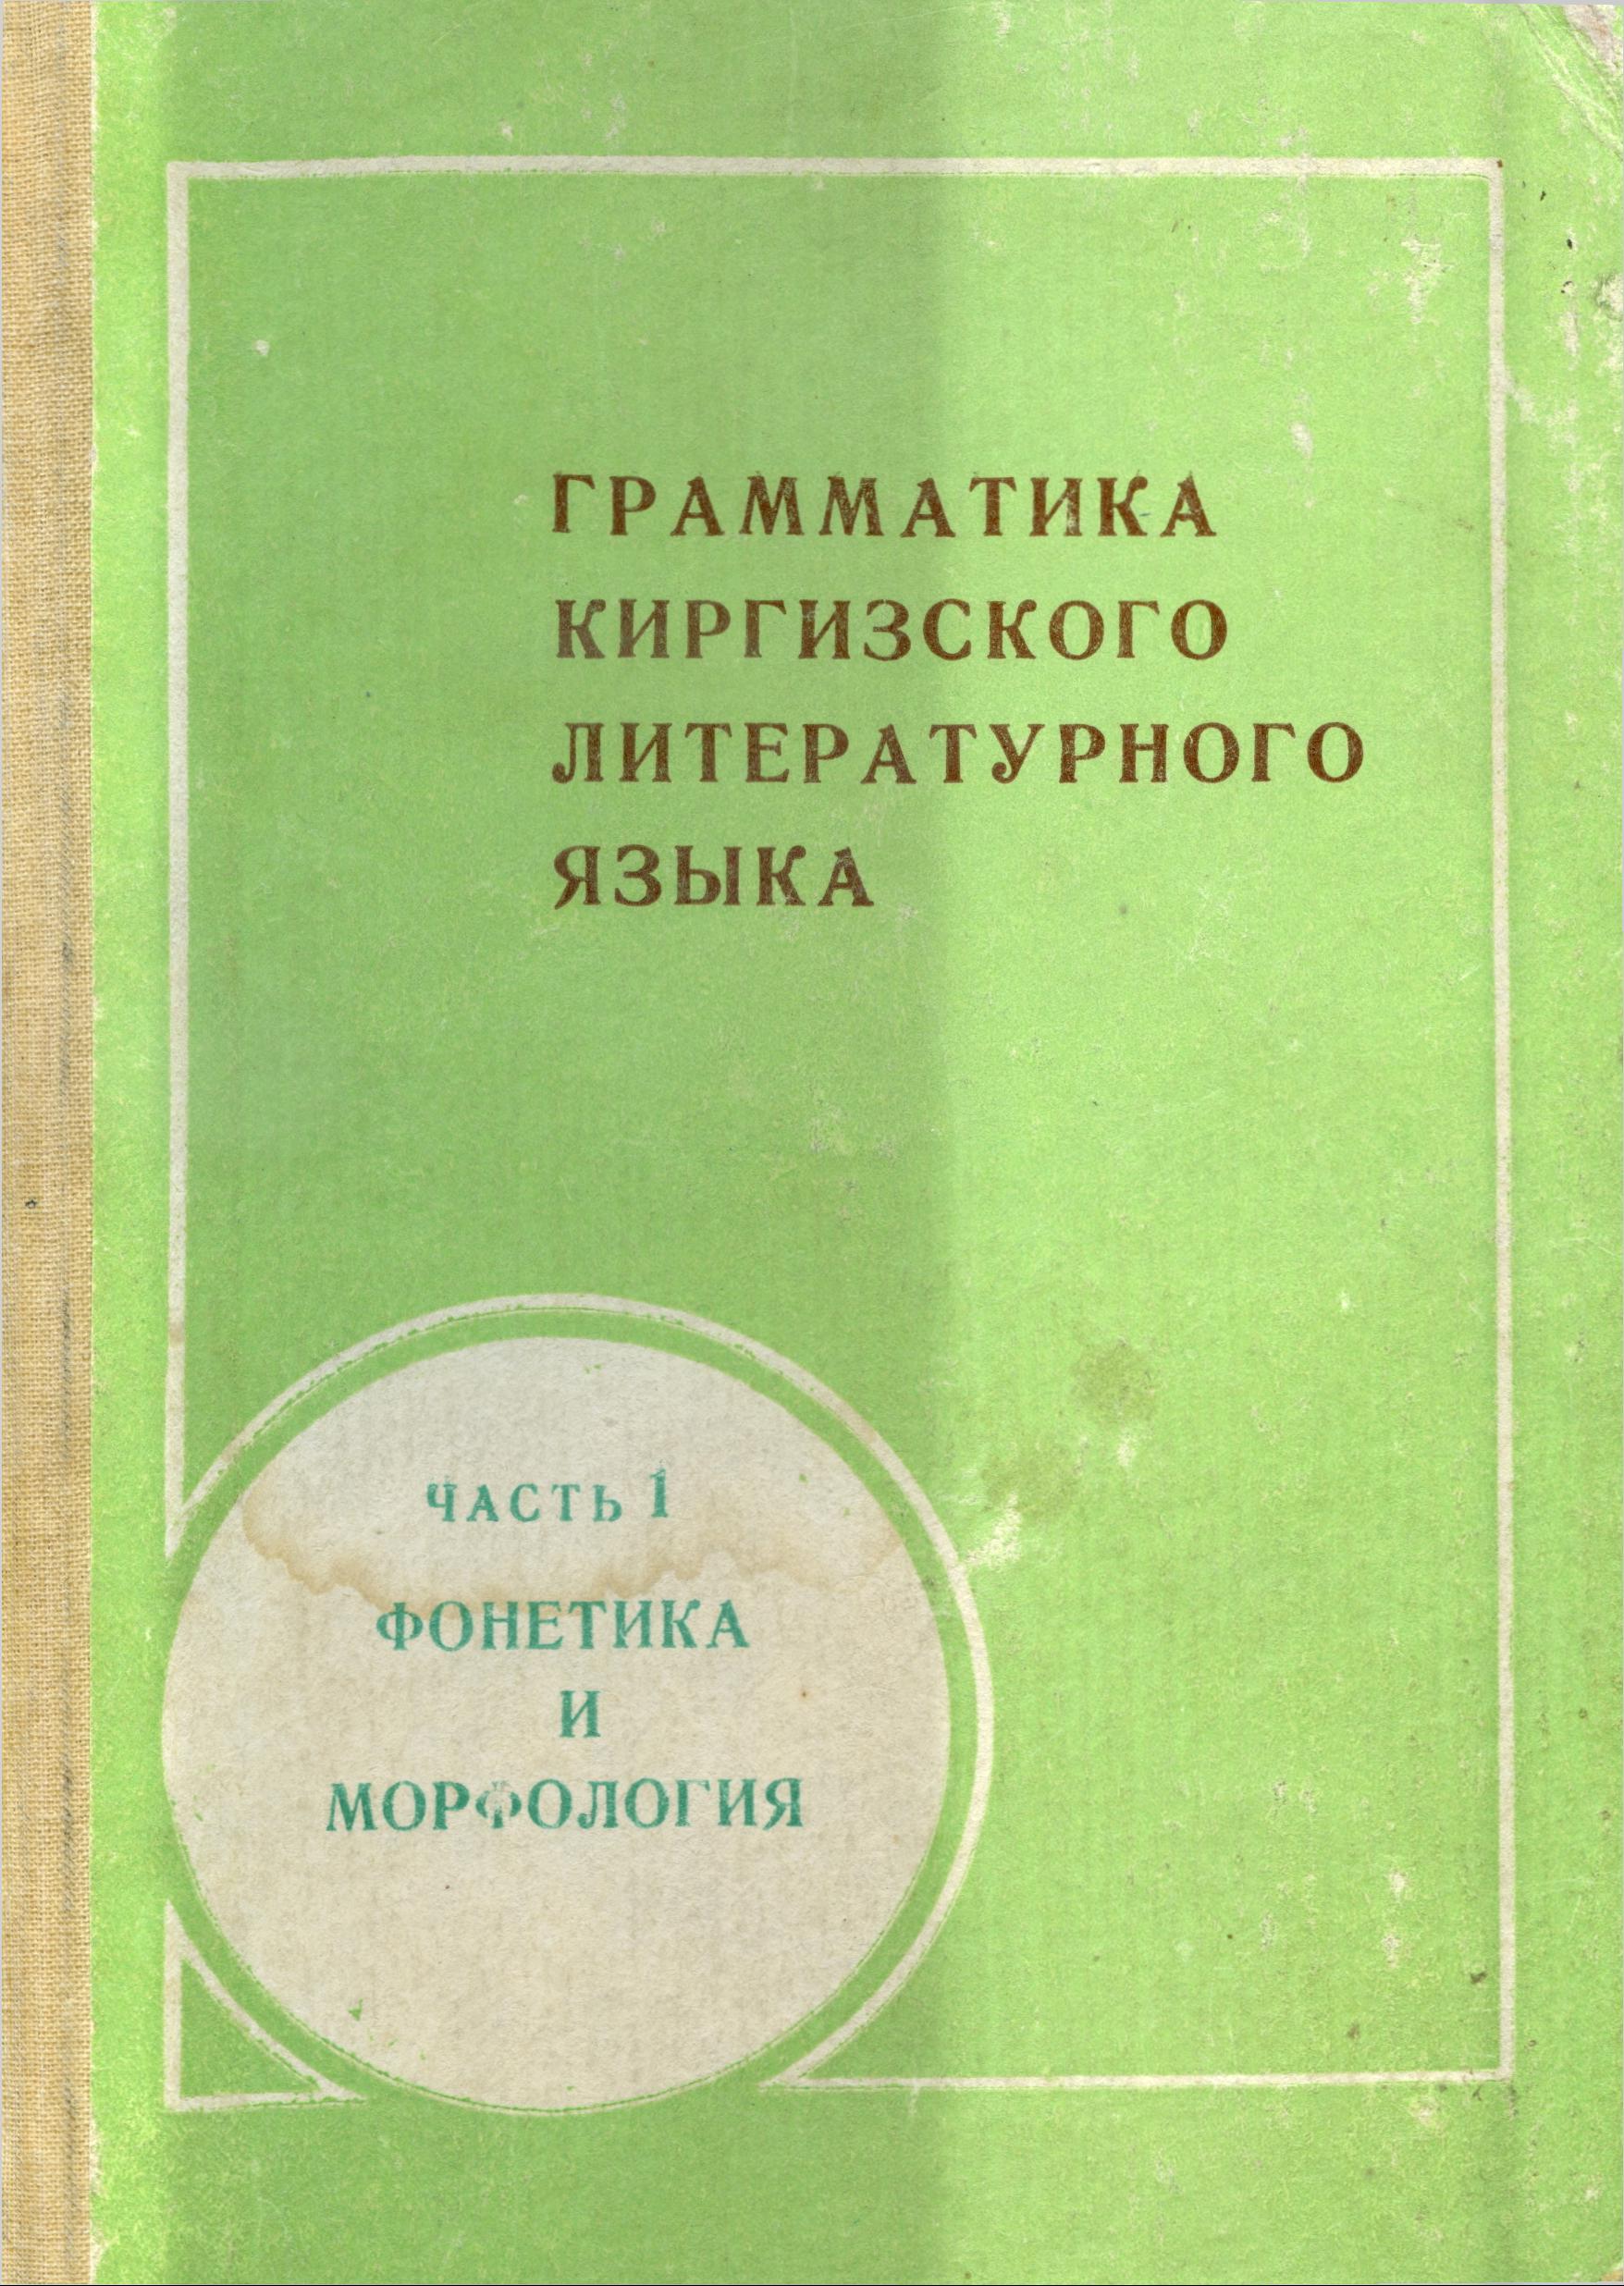 Грамматика киргизского литературного языка. Часть 1. Фонетика и морфология